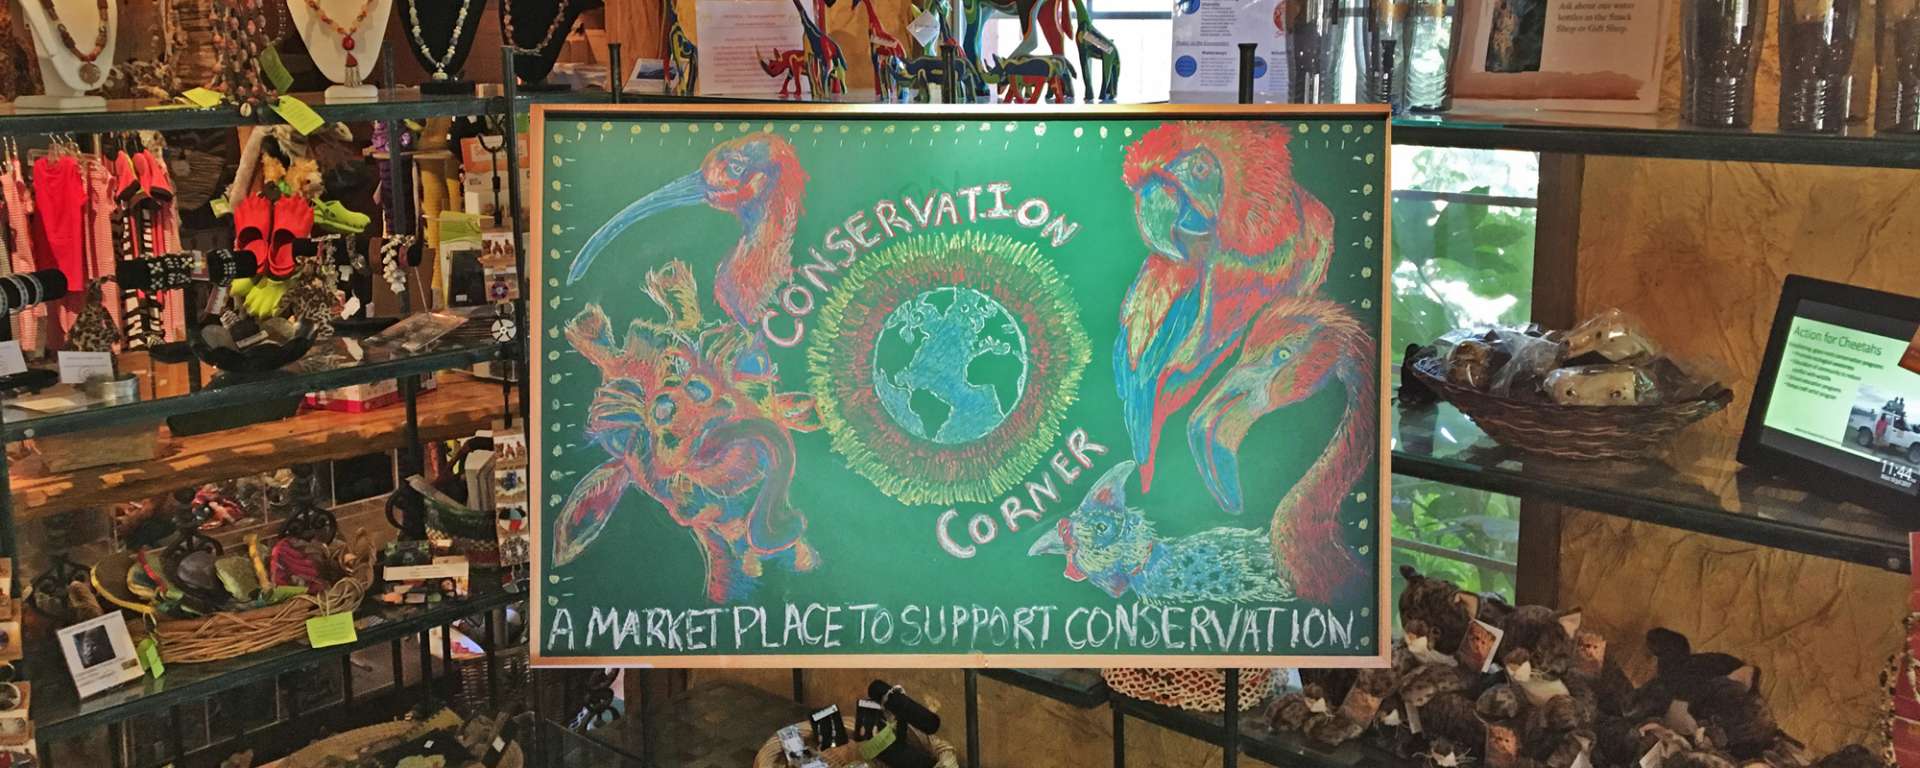 Conservation Corner Gift Shop